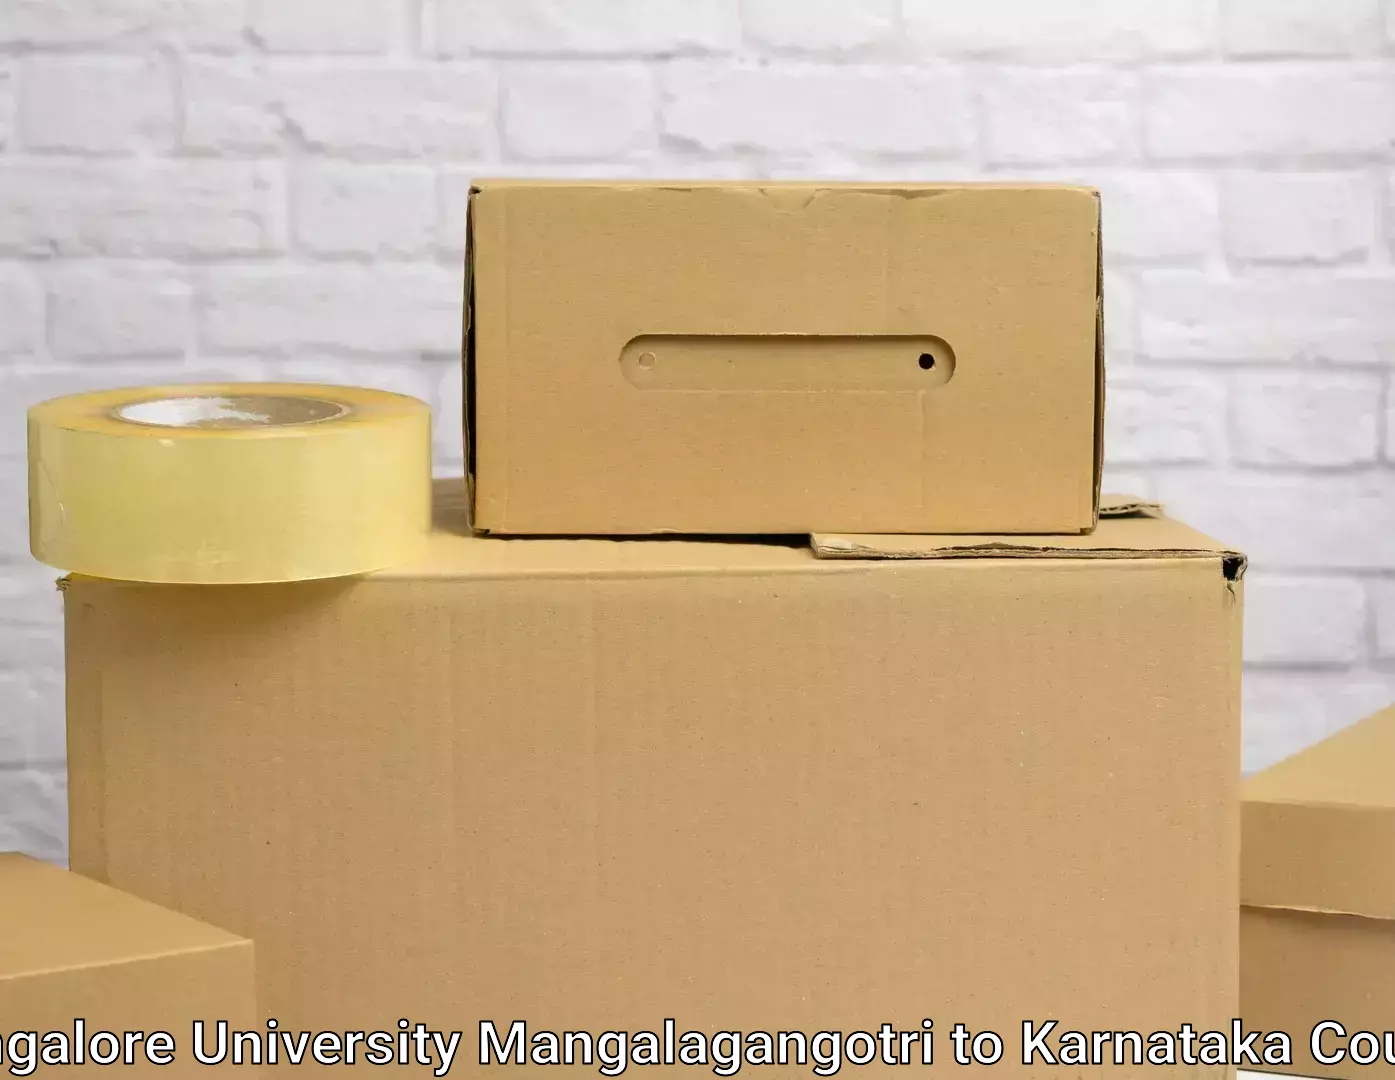 Premium moving services Mangalore University Mangalagangotri to Hoovina Hadagali